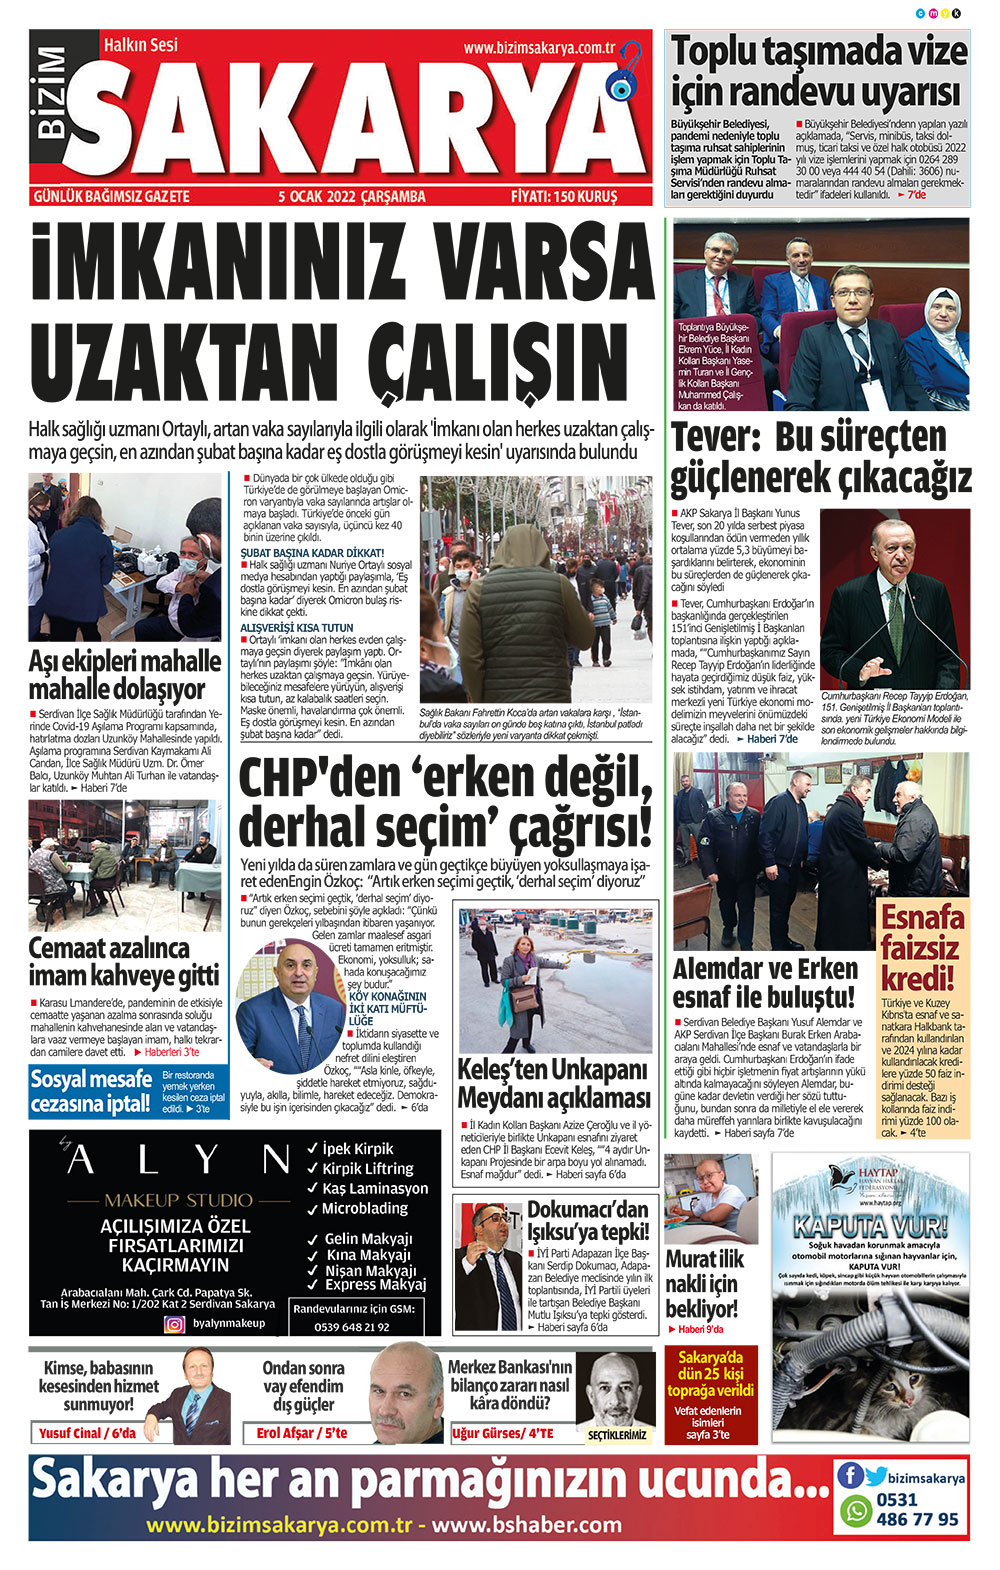 Bizim Sakarya Gazetesi - 05.01.2022 Manşeti